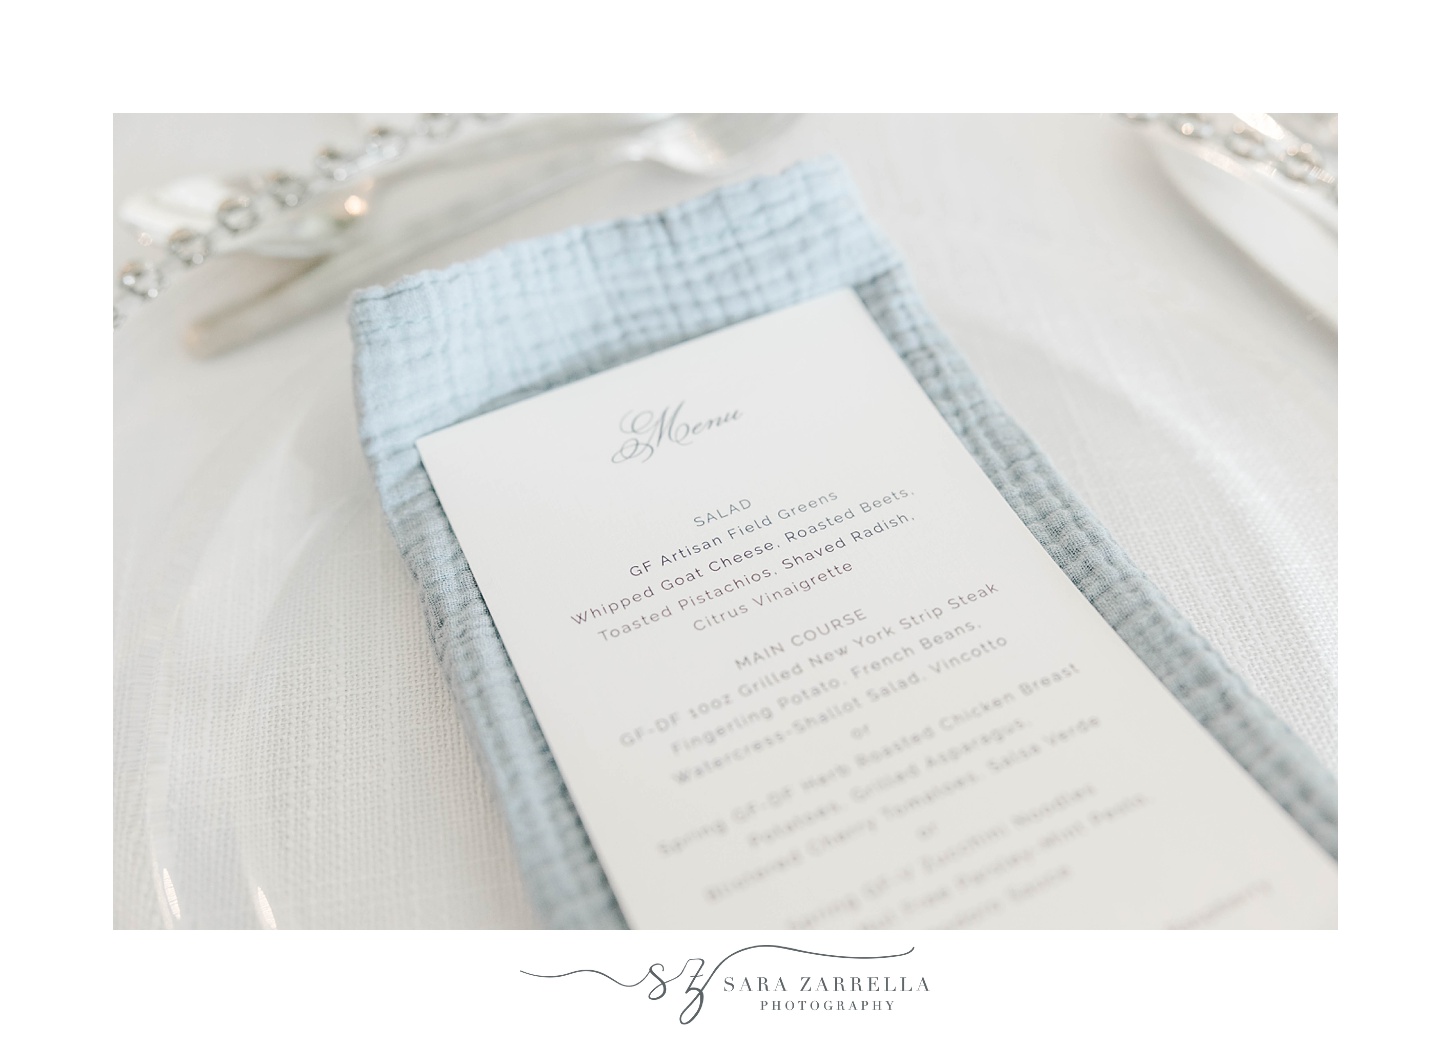 menu and blue napkins for elegant Newport Beach House wedding reception